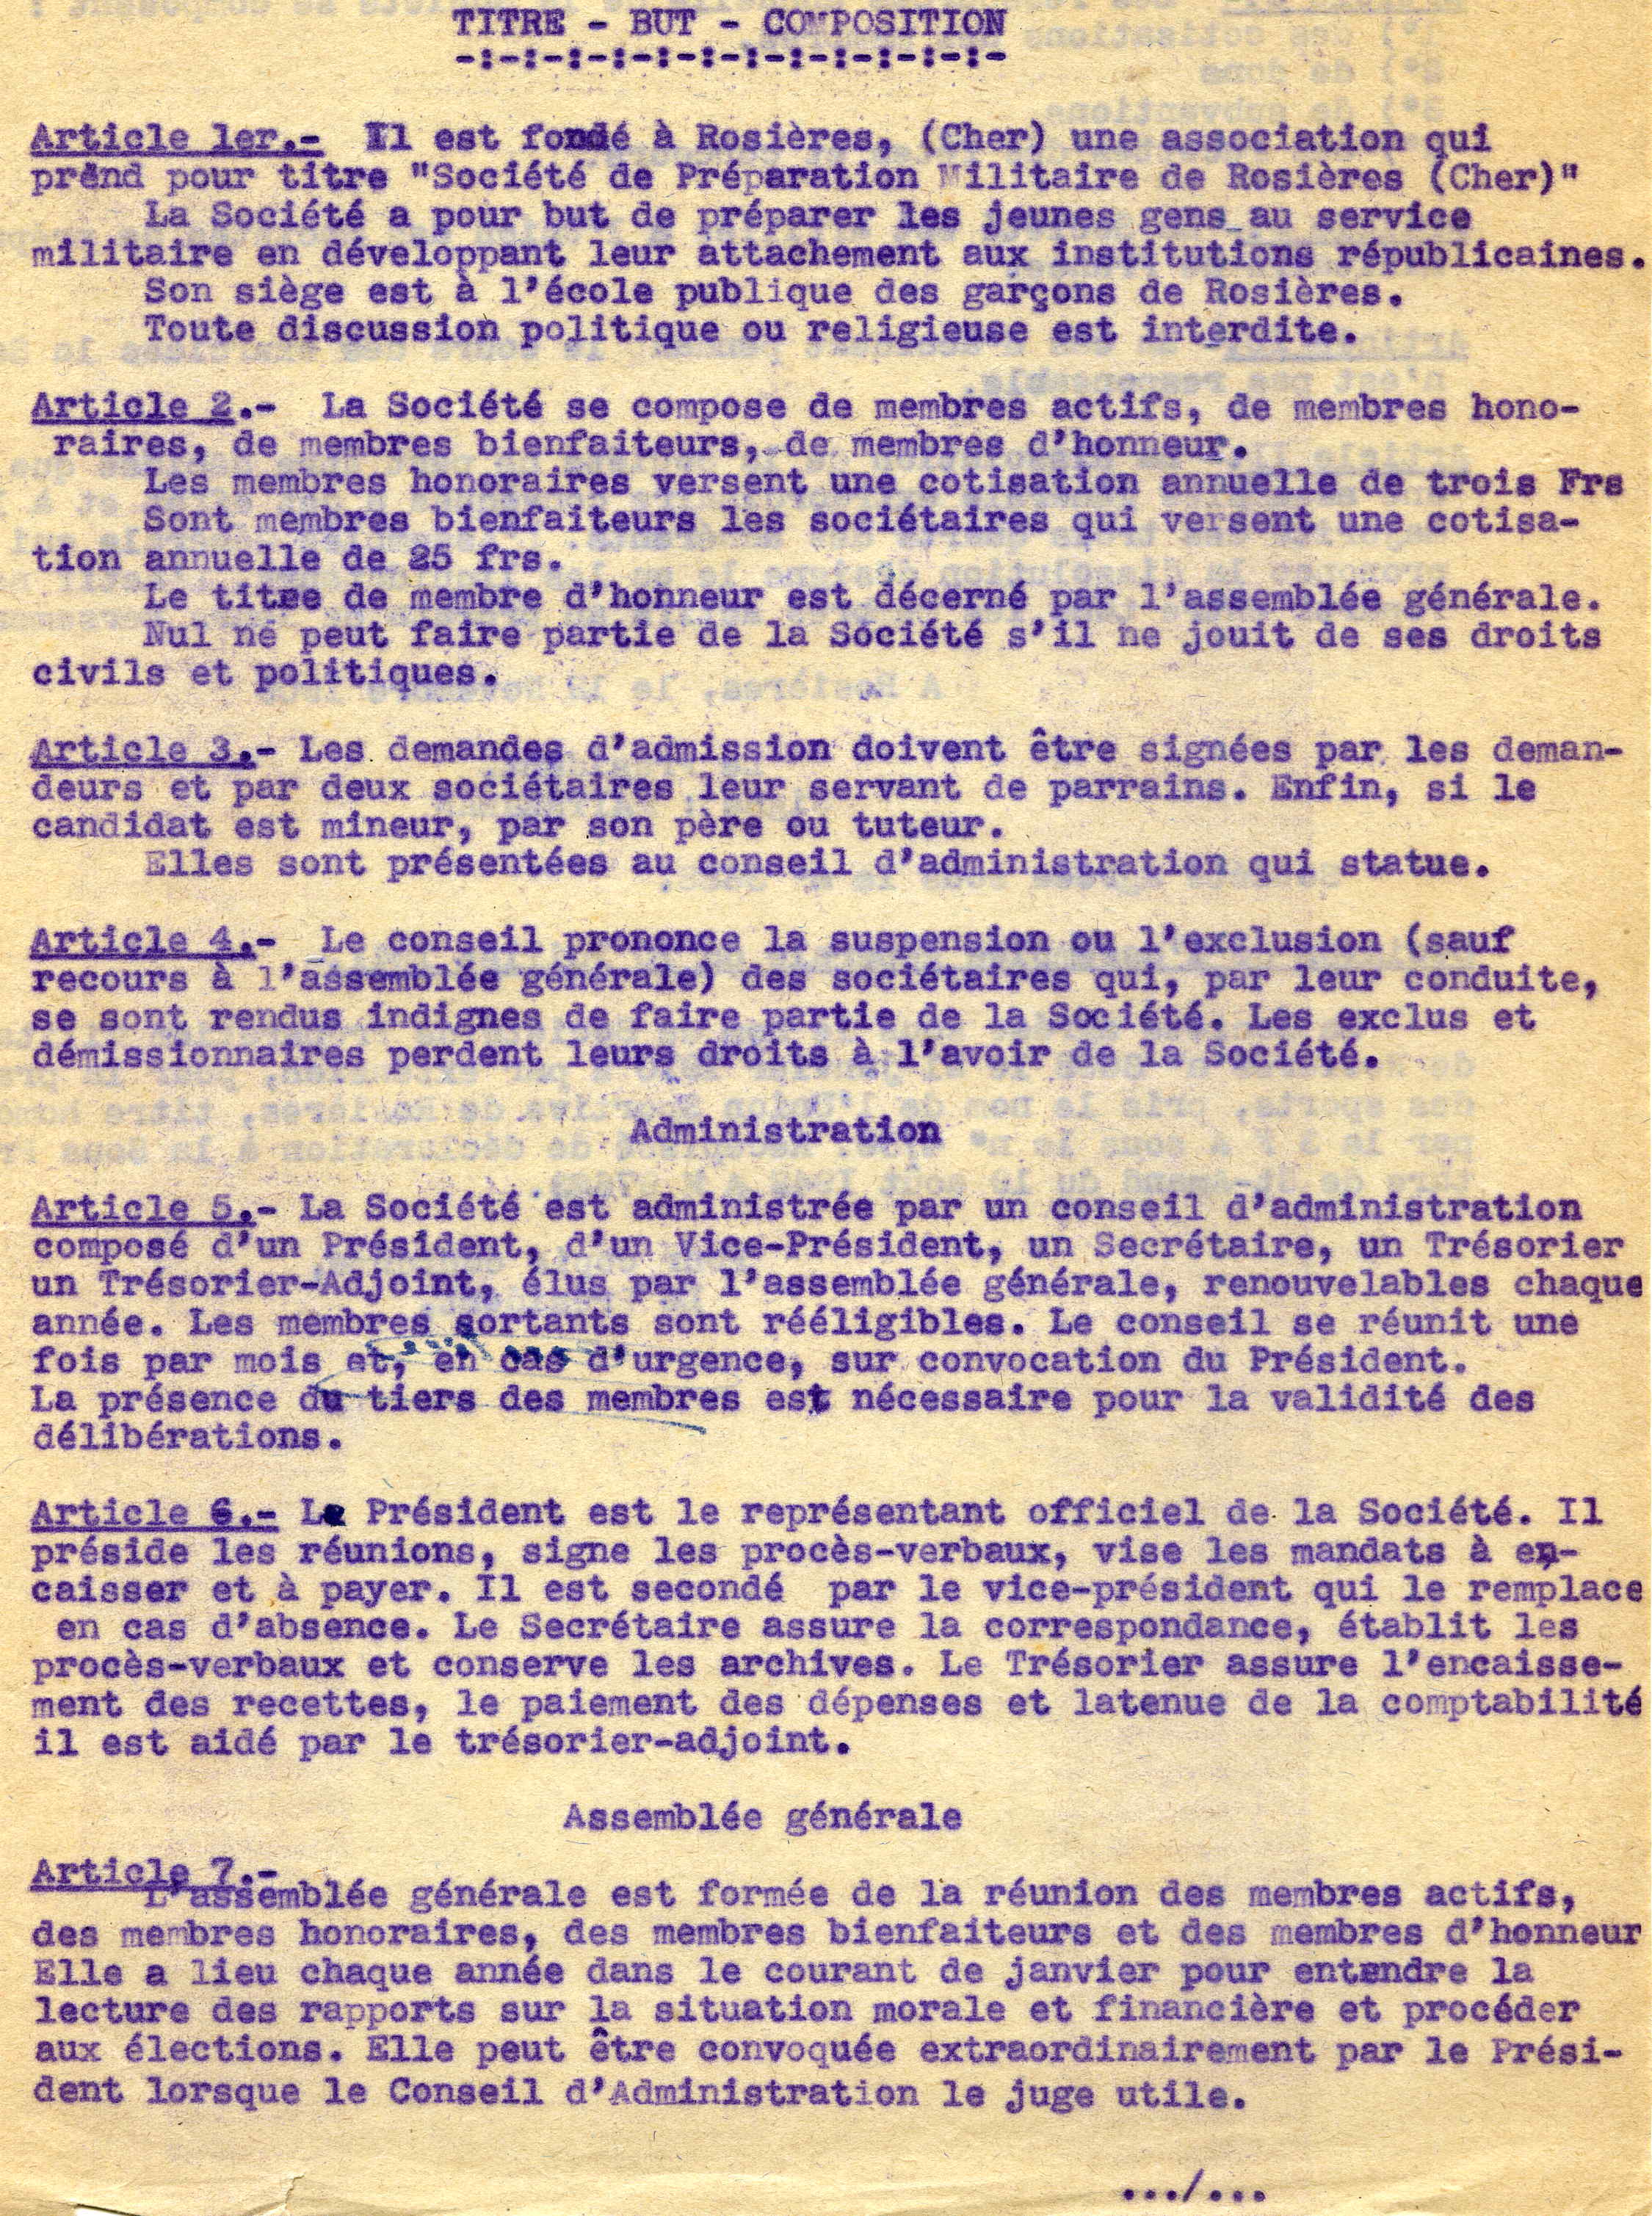 Modifications des statuts de l'association en 1942 (articles 1 à 7)